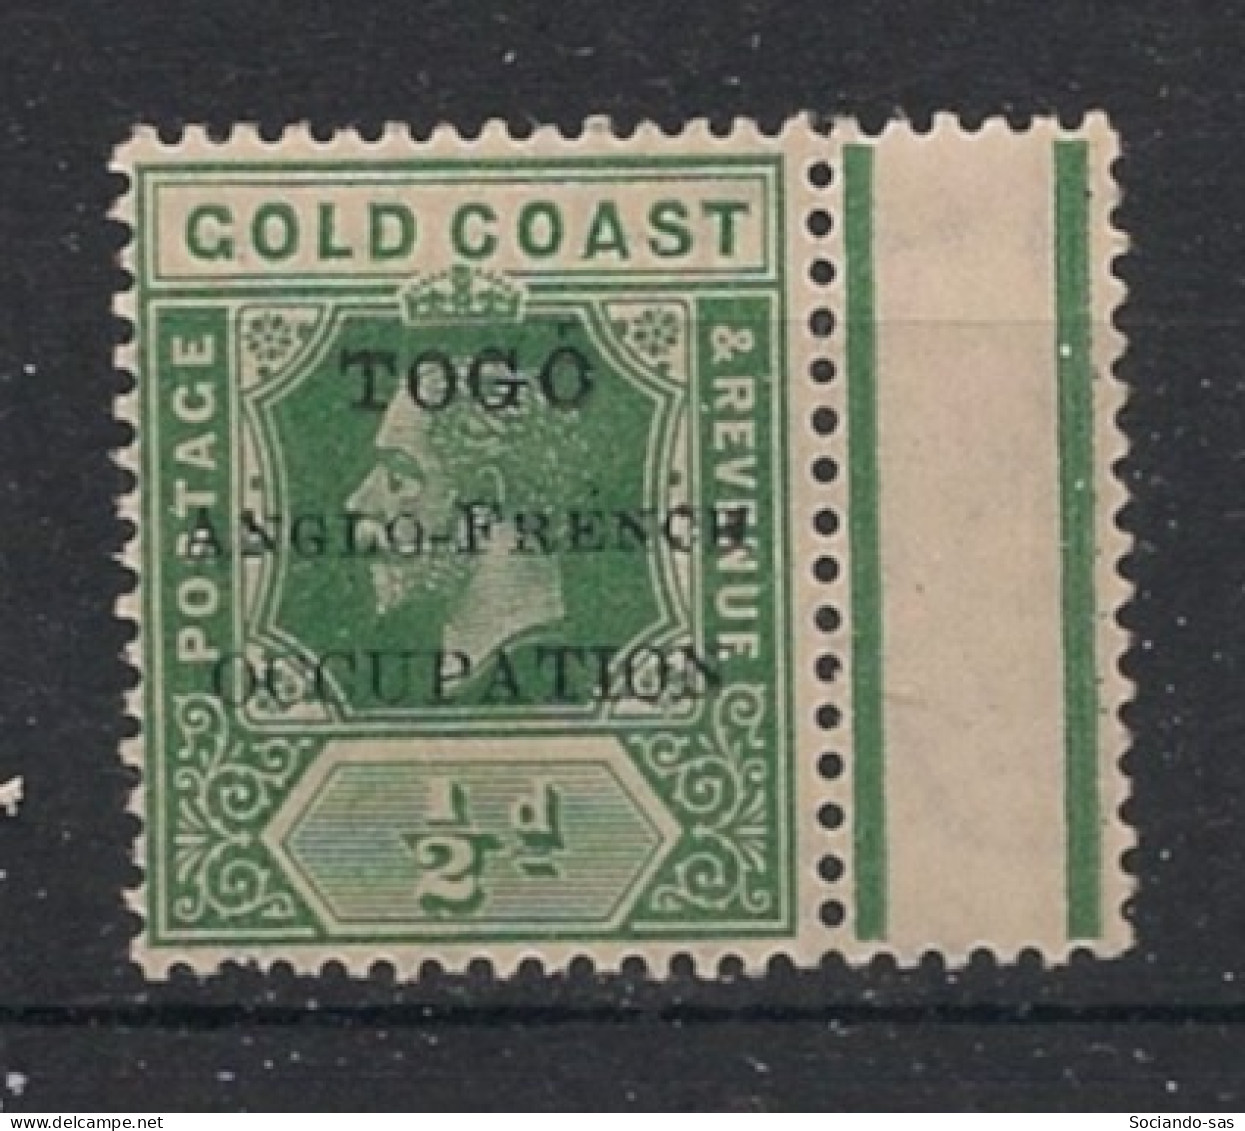 TOGO - 1915 - N°YT. 59 - Gold Coast 1/2p Vert - Neuf Luxe** / MNH / Postfrisch - Ongebruikt